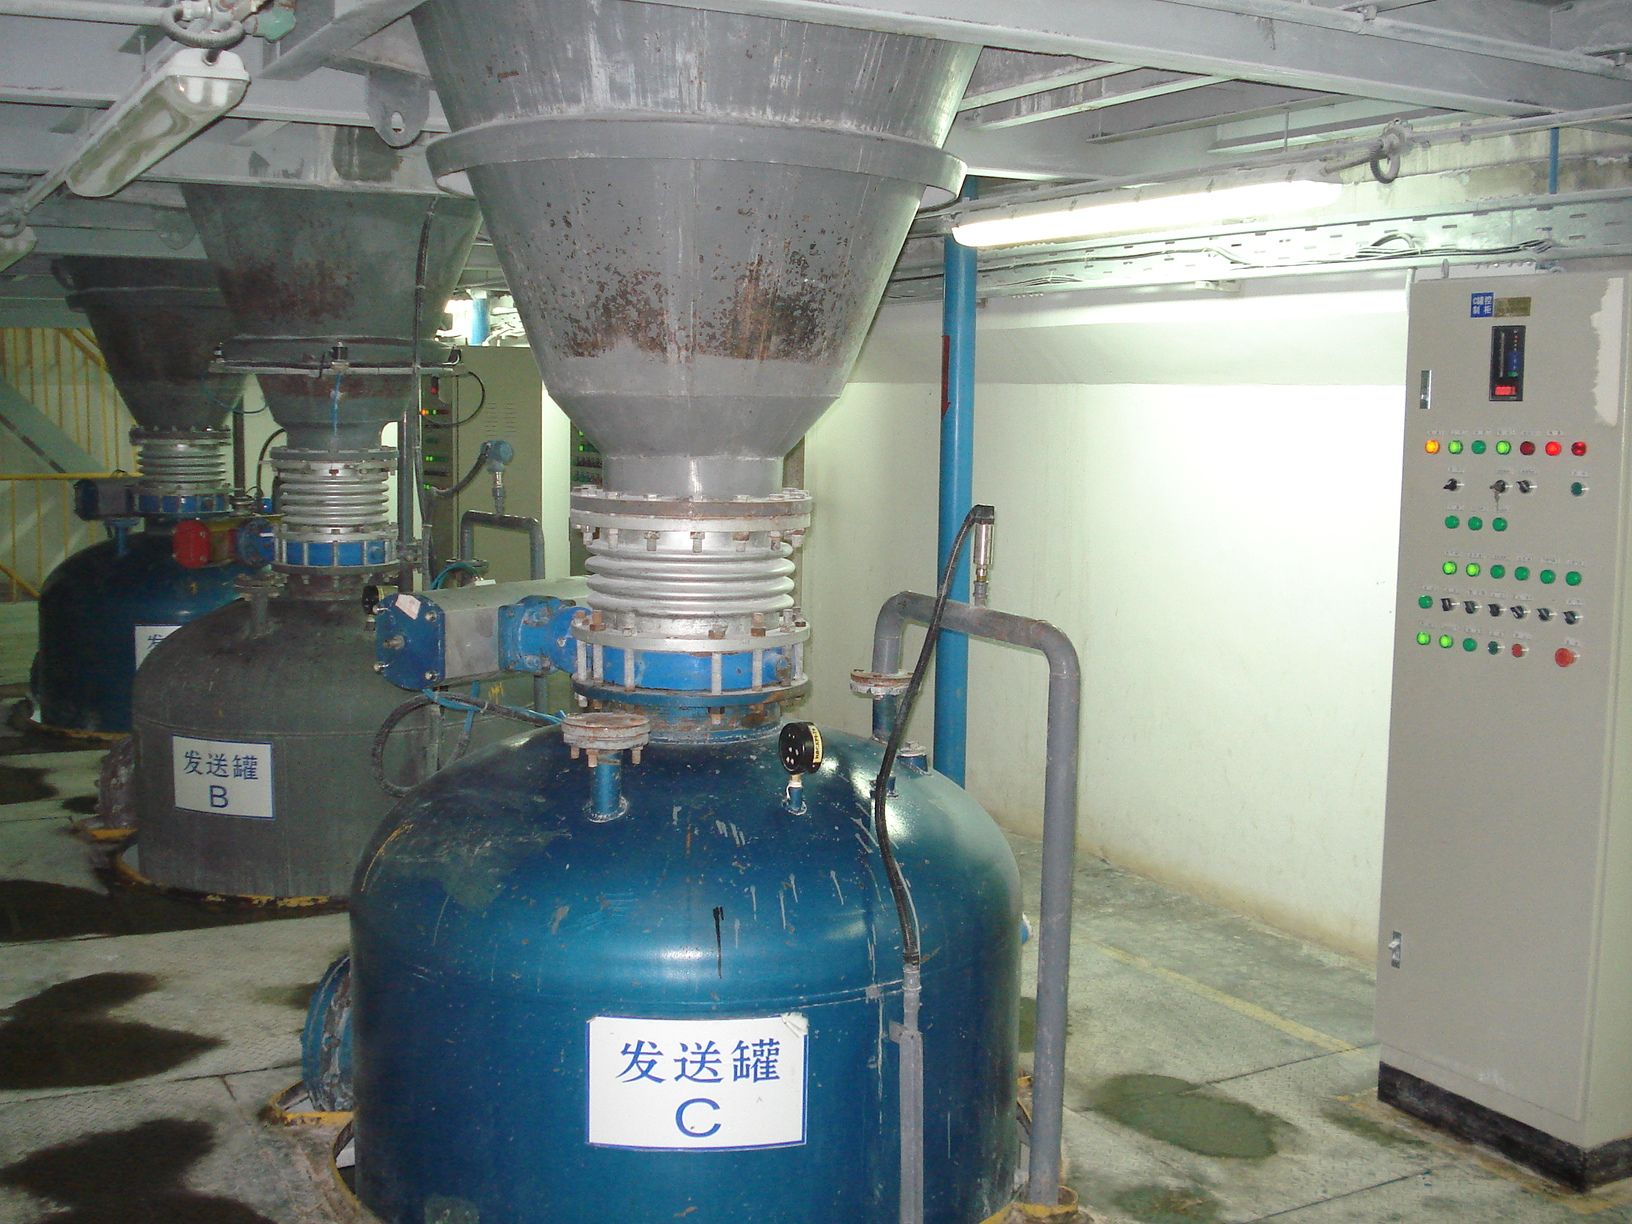 合肥利华洗涤剂公司芒硝纯碱沸石下行式正压密相气力输送仓泵1-5号线